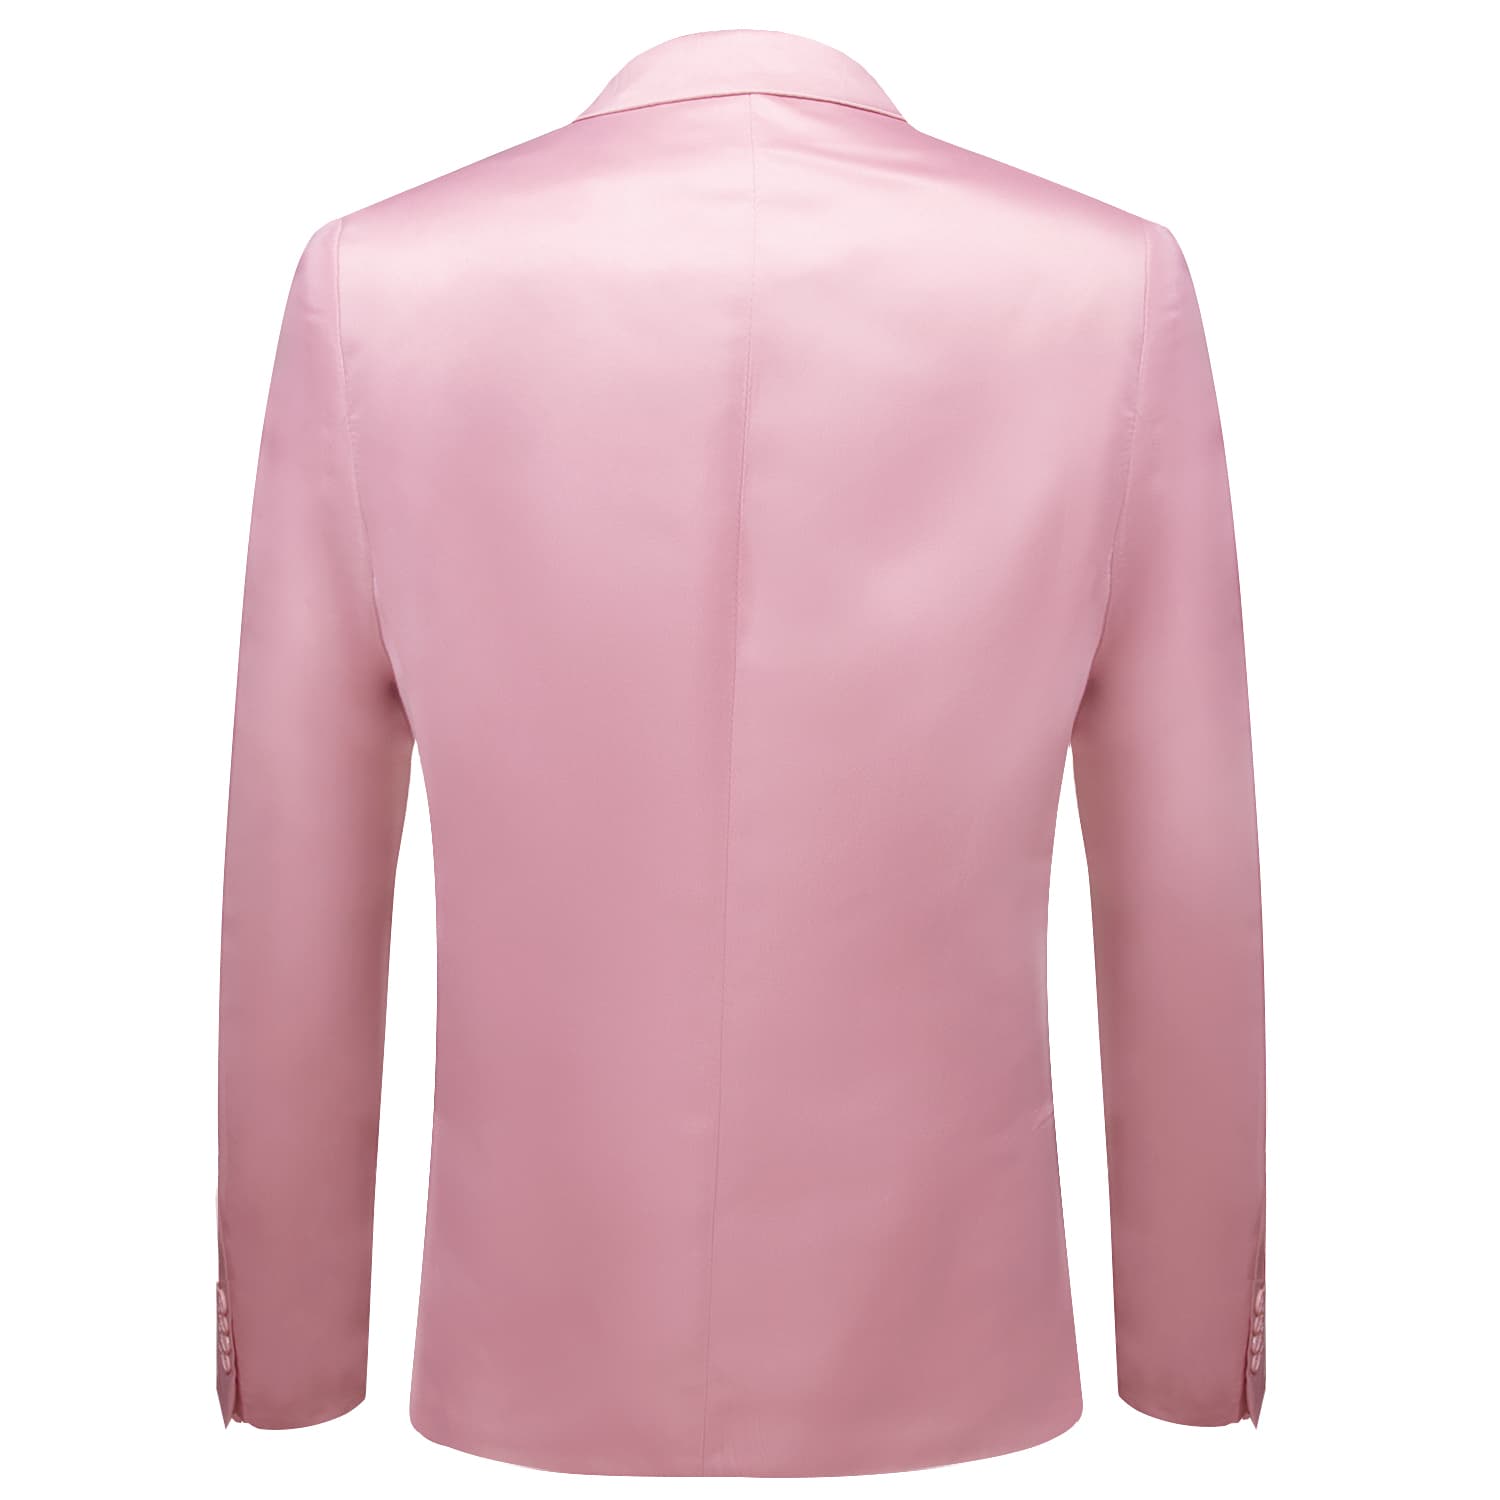  Blazer Pink Men's Wedding Business Solid Top Men Suit